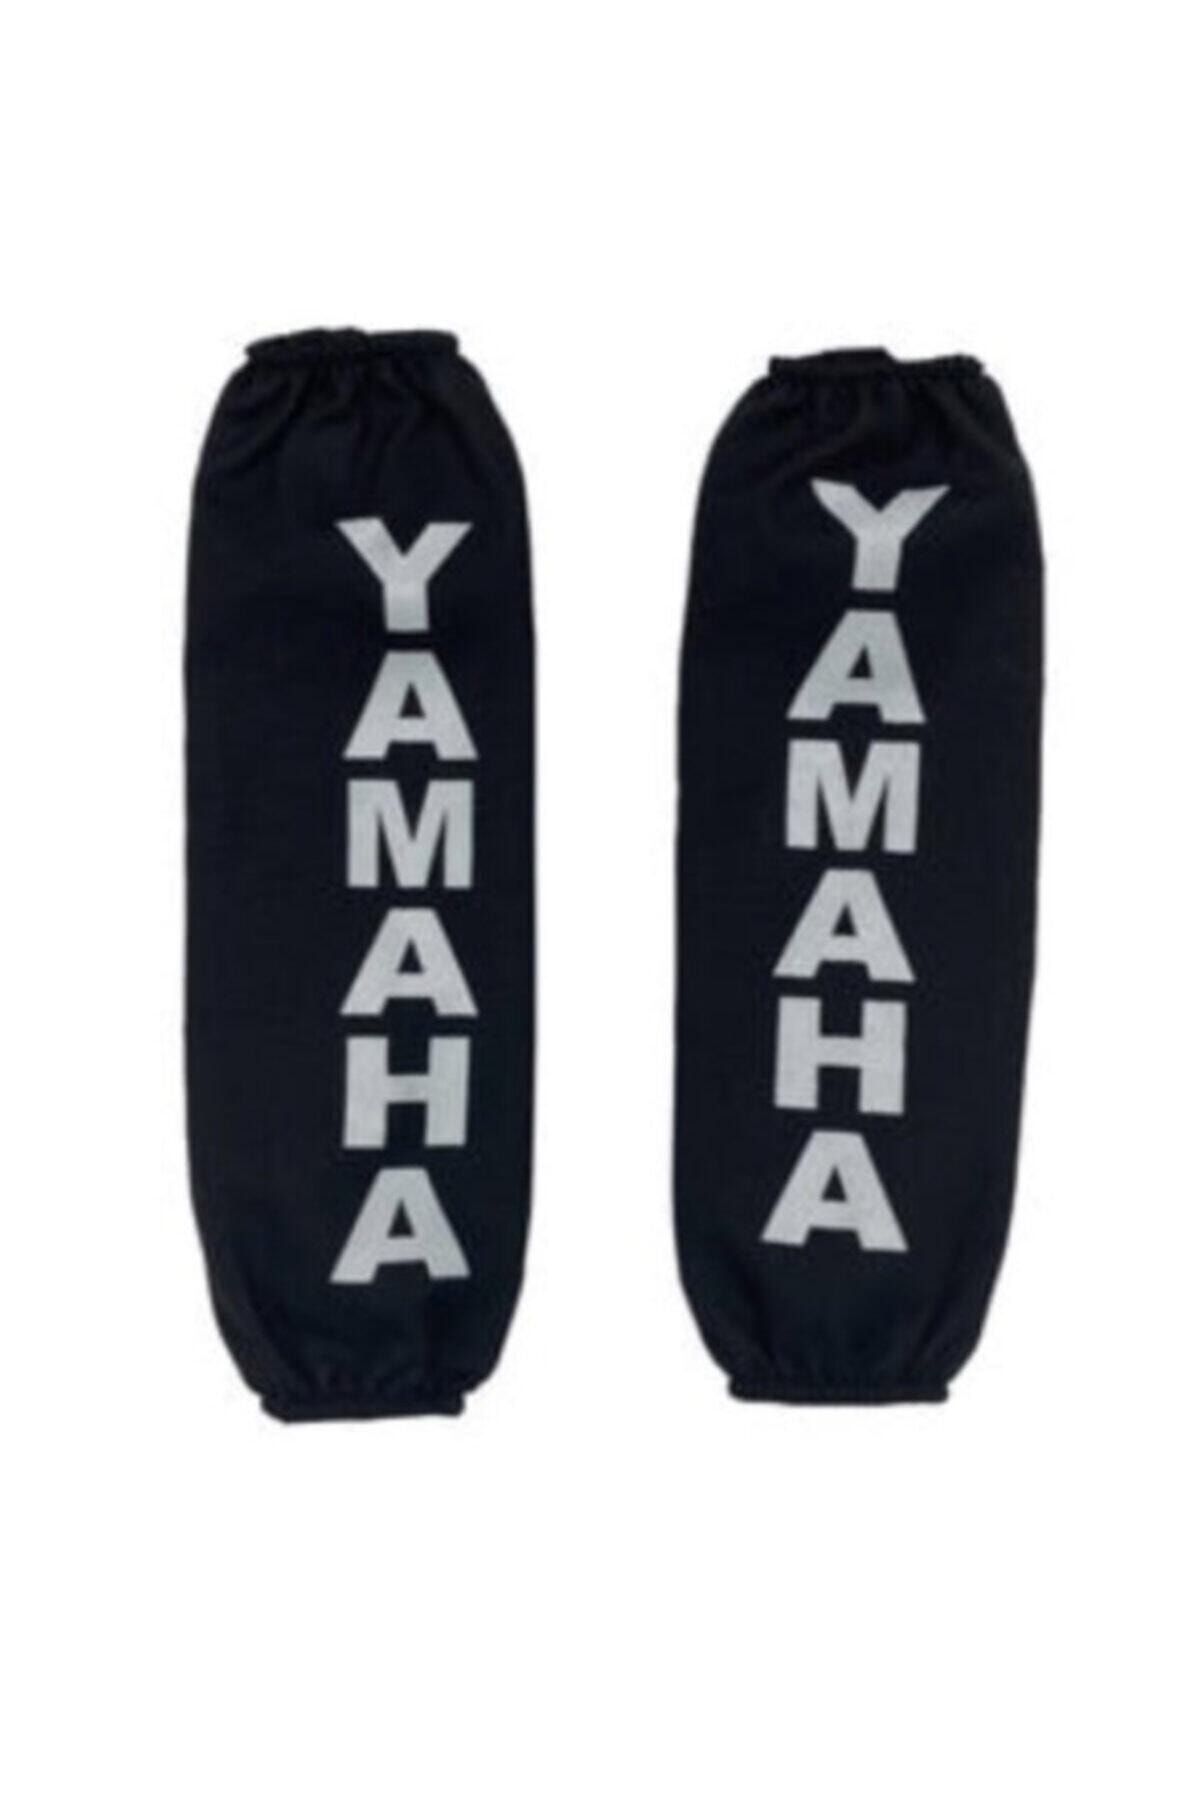 Yamaha Xmax Tüm Yıllar Amortisör Kılıf